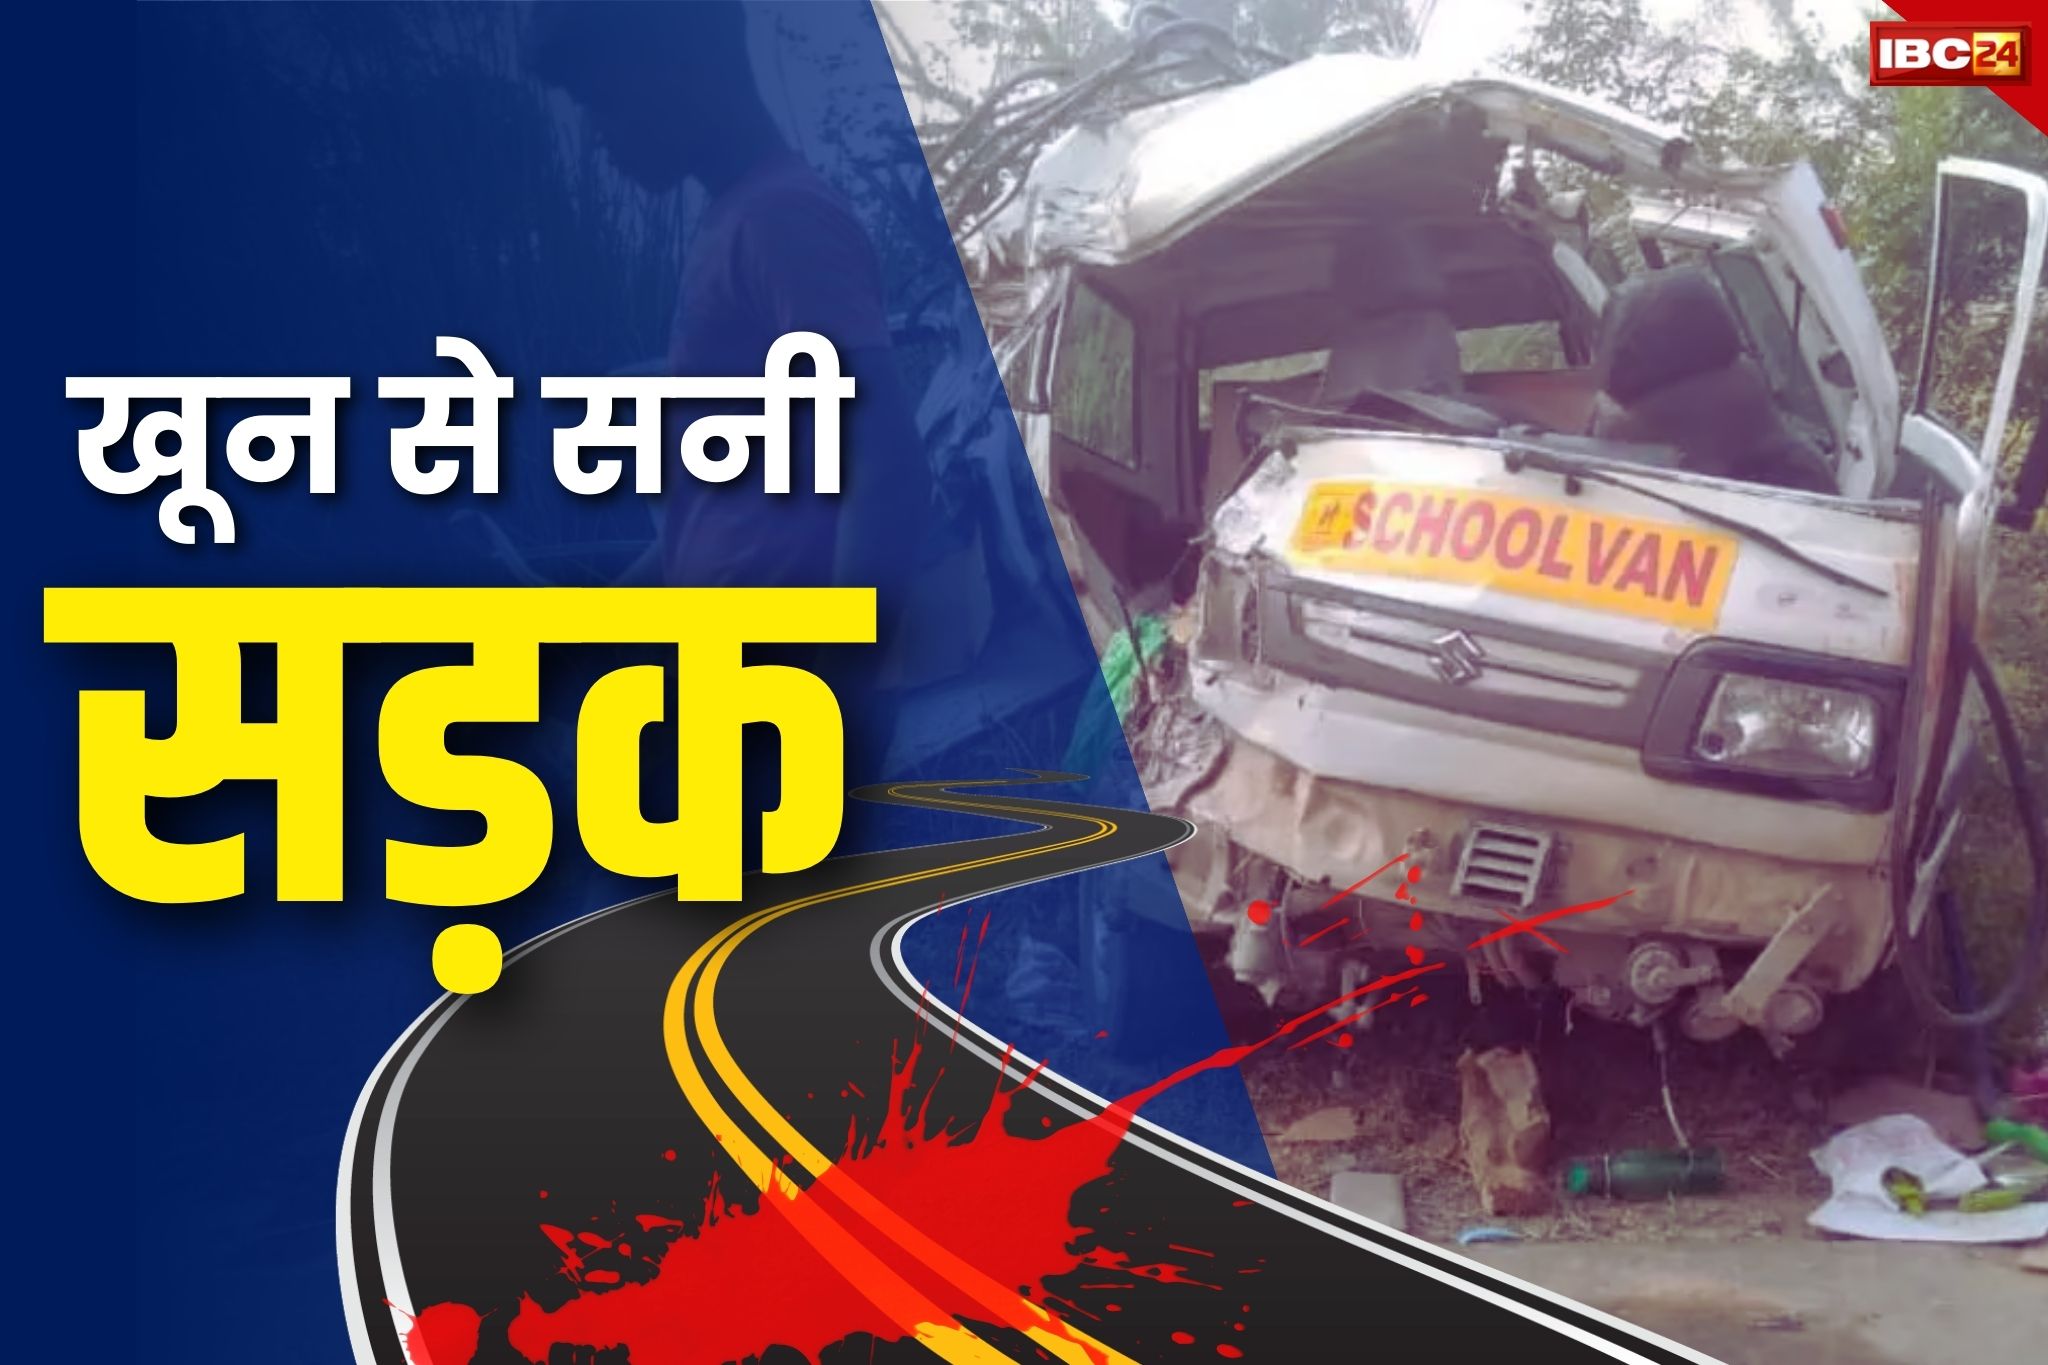 Road Accident in Jashpur: दर्दनाक हादसा, दो बाइकों के बीच जबरदस्त टक्कर, तीन लोगों की मौत